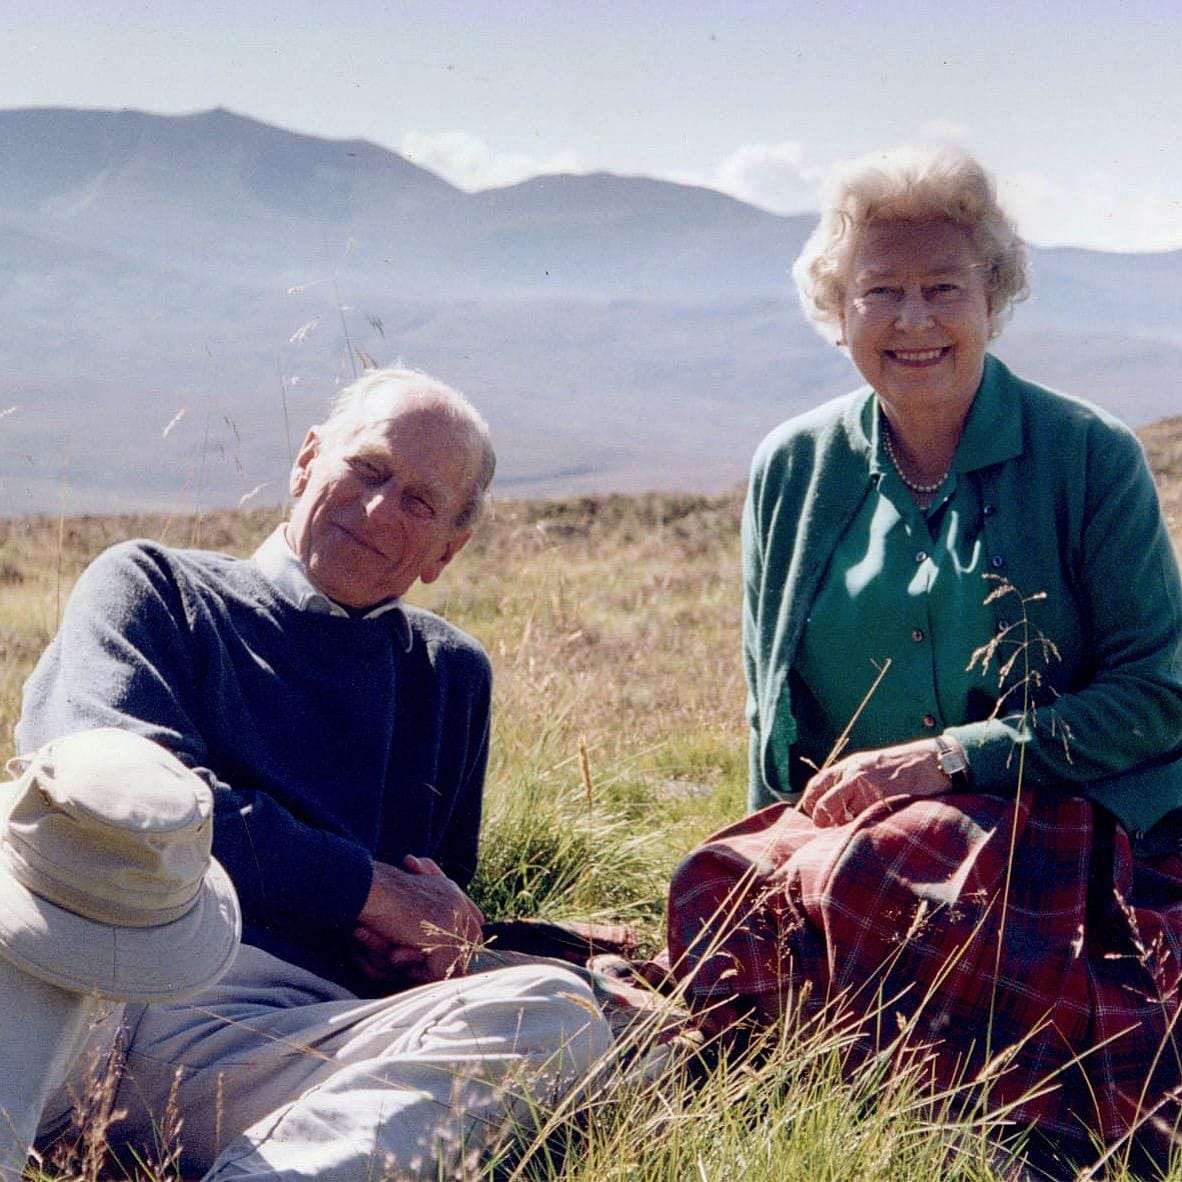 الملكة إليزابيث وزوجها الأمير فيليب على قمة كويلز أوف مويك بالقرب من بالاتر في اسكتلندا